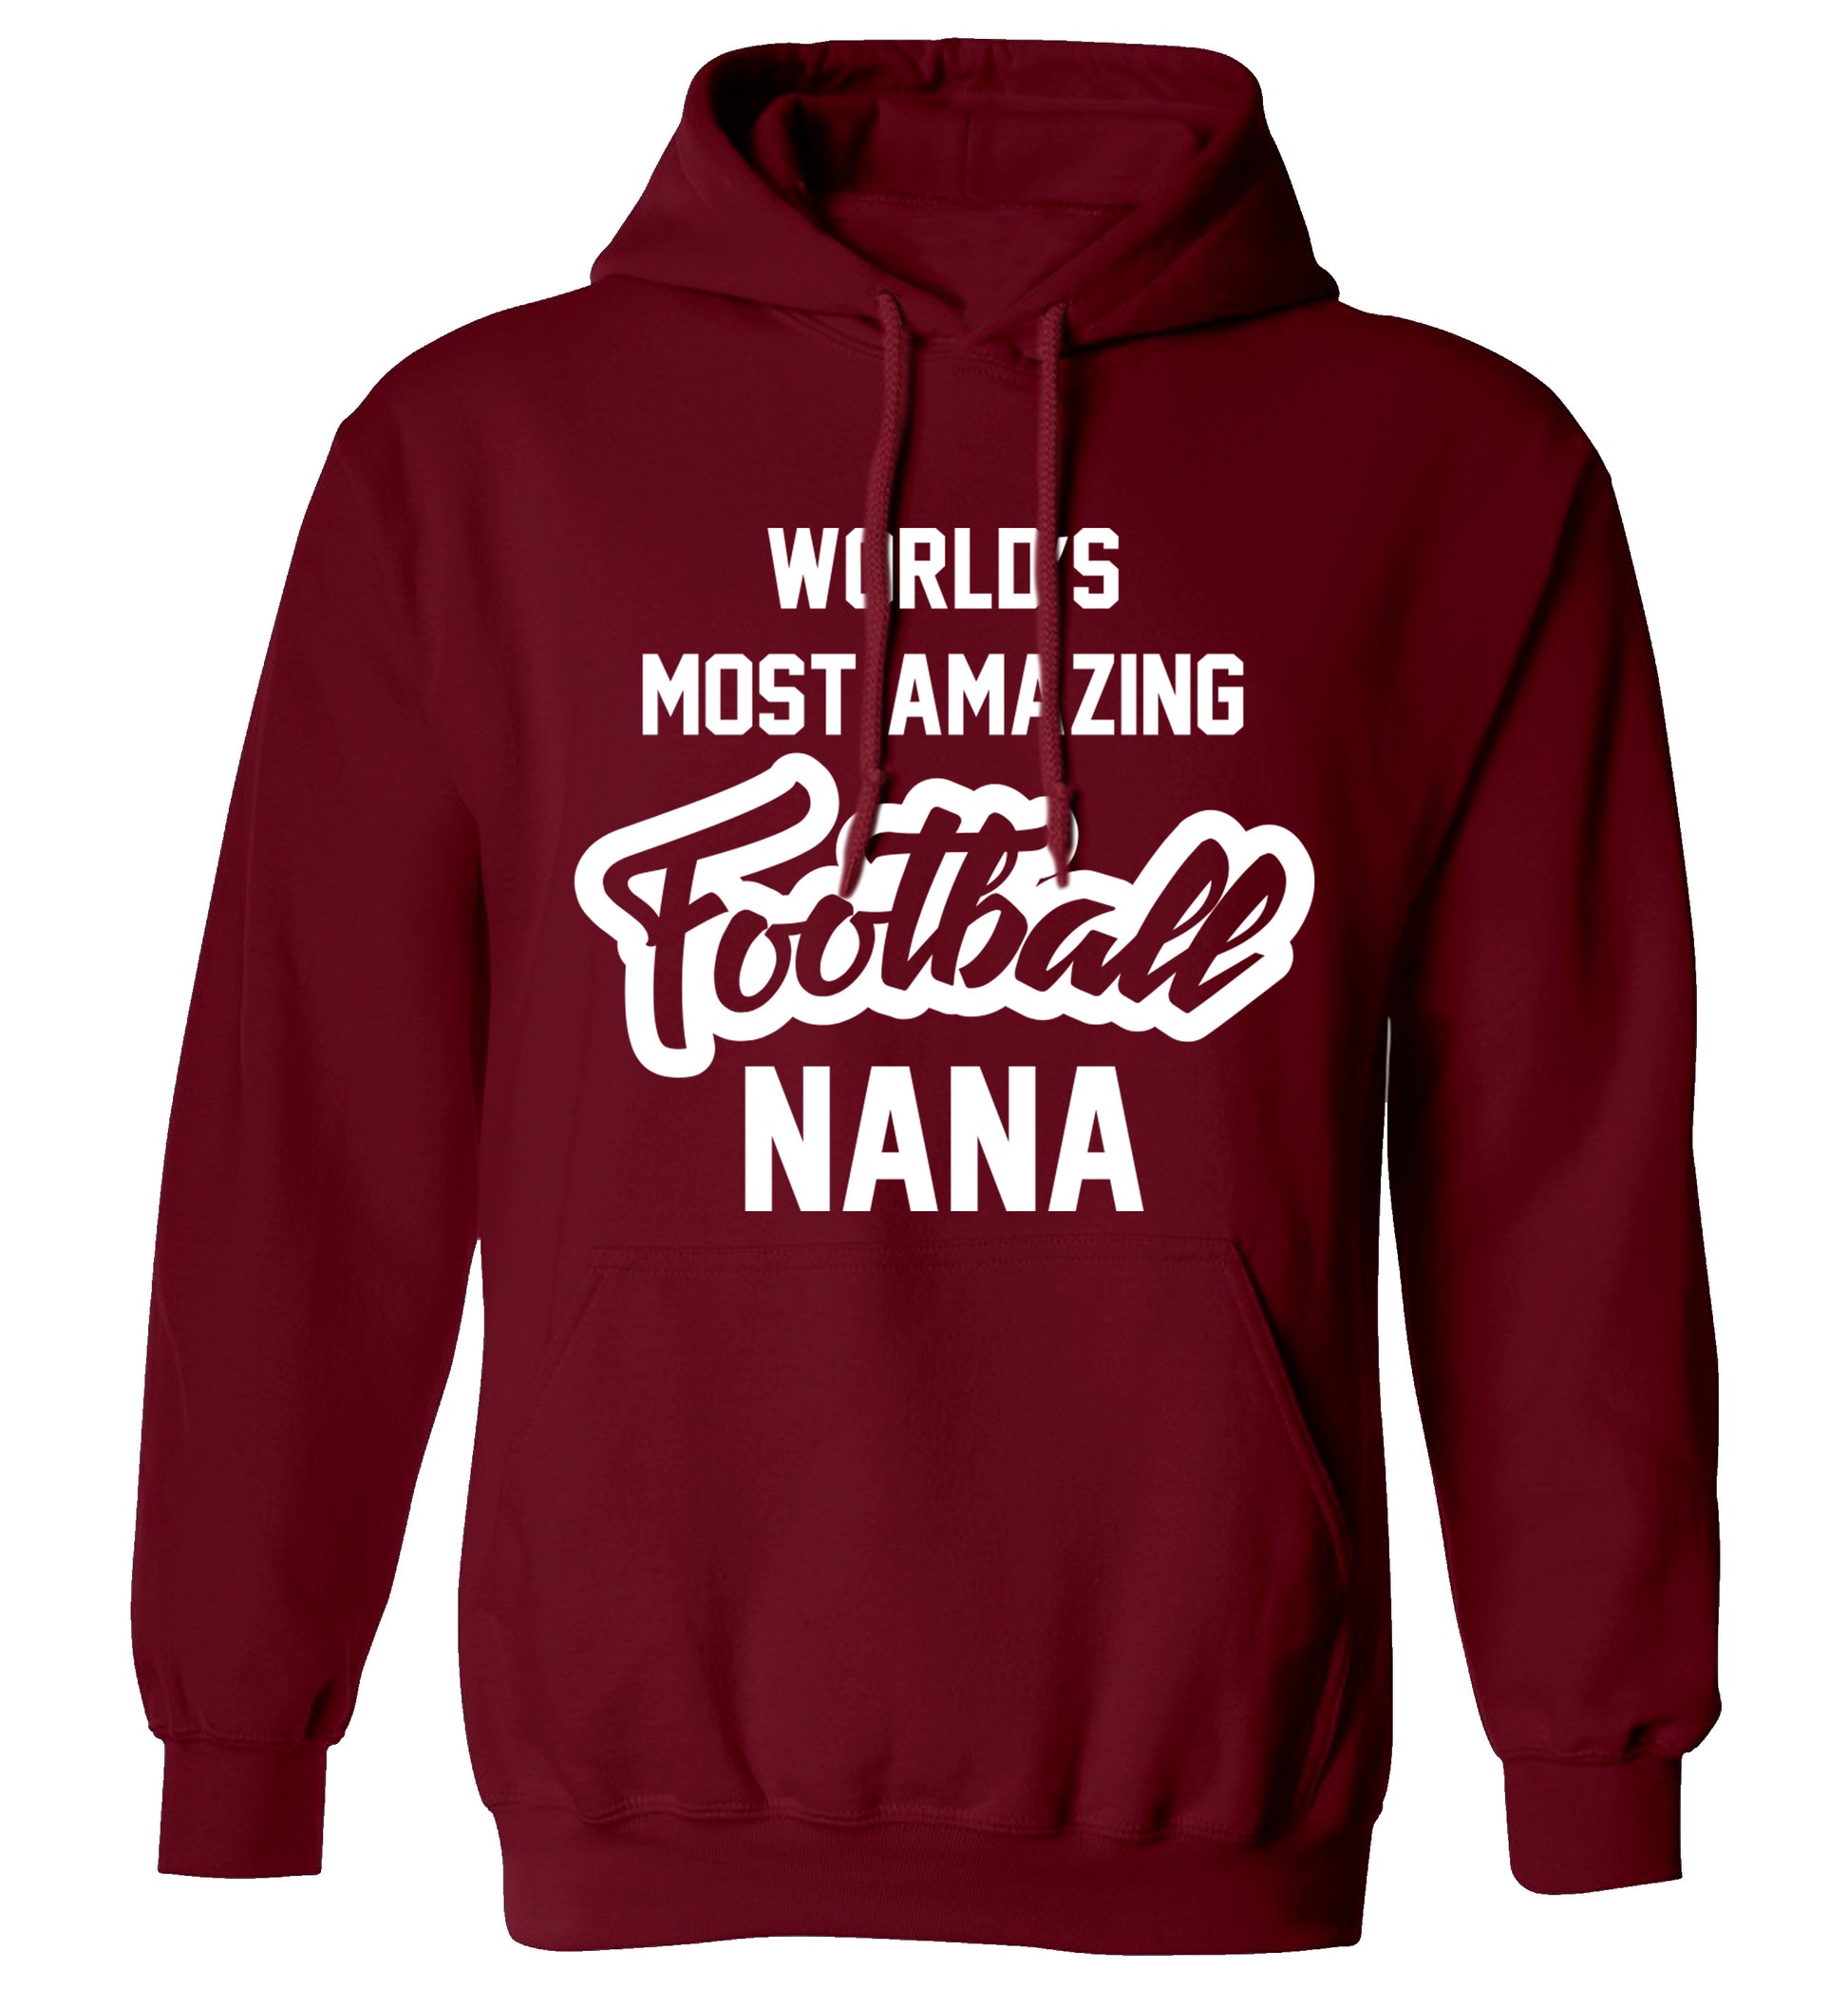 Worlds most amazing football nana adults unisexmaroon hoodie 2XL